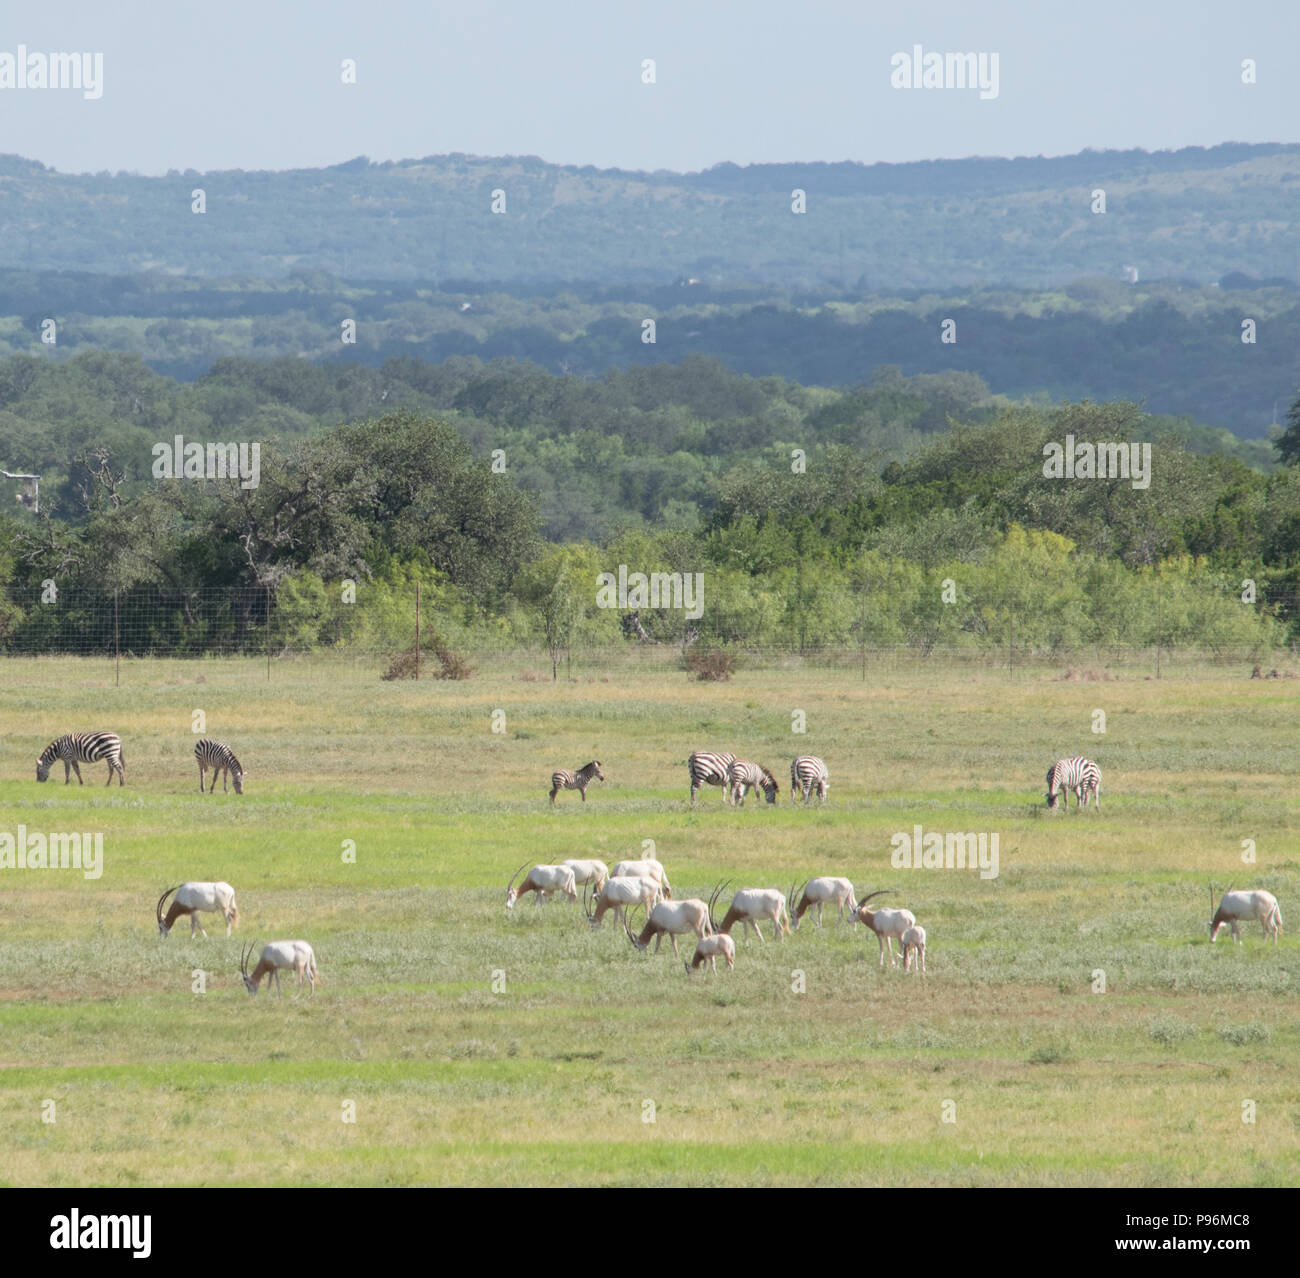 Estinta nel selvaggio, una mandria di Scimitar Oryx lambisce pacificamente su un ranch a soli pochi minuti dal centro cittadino di Austin nel Paese delle Colline del Texas centrale. Foto Stock